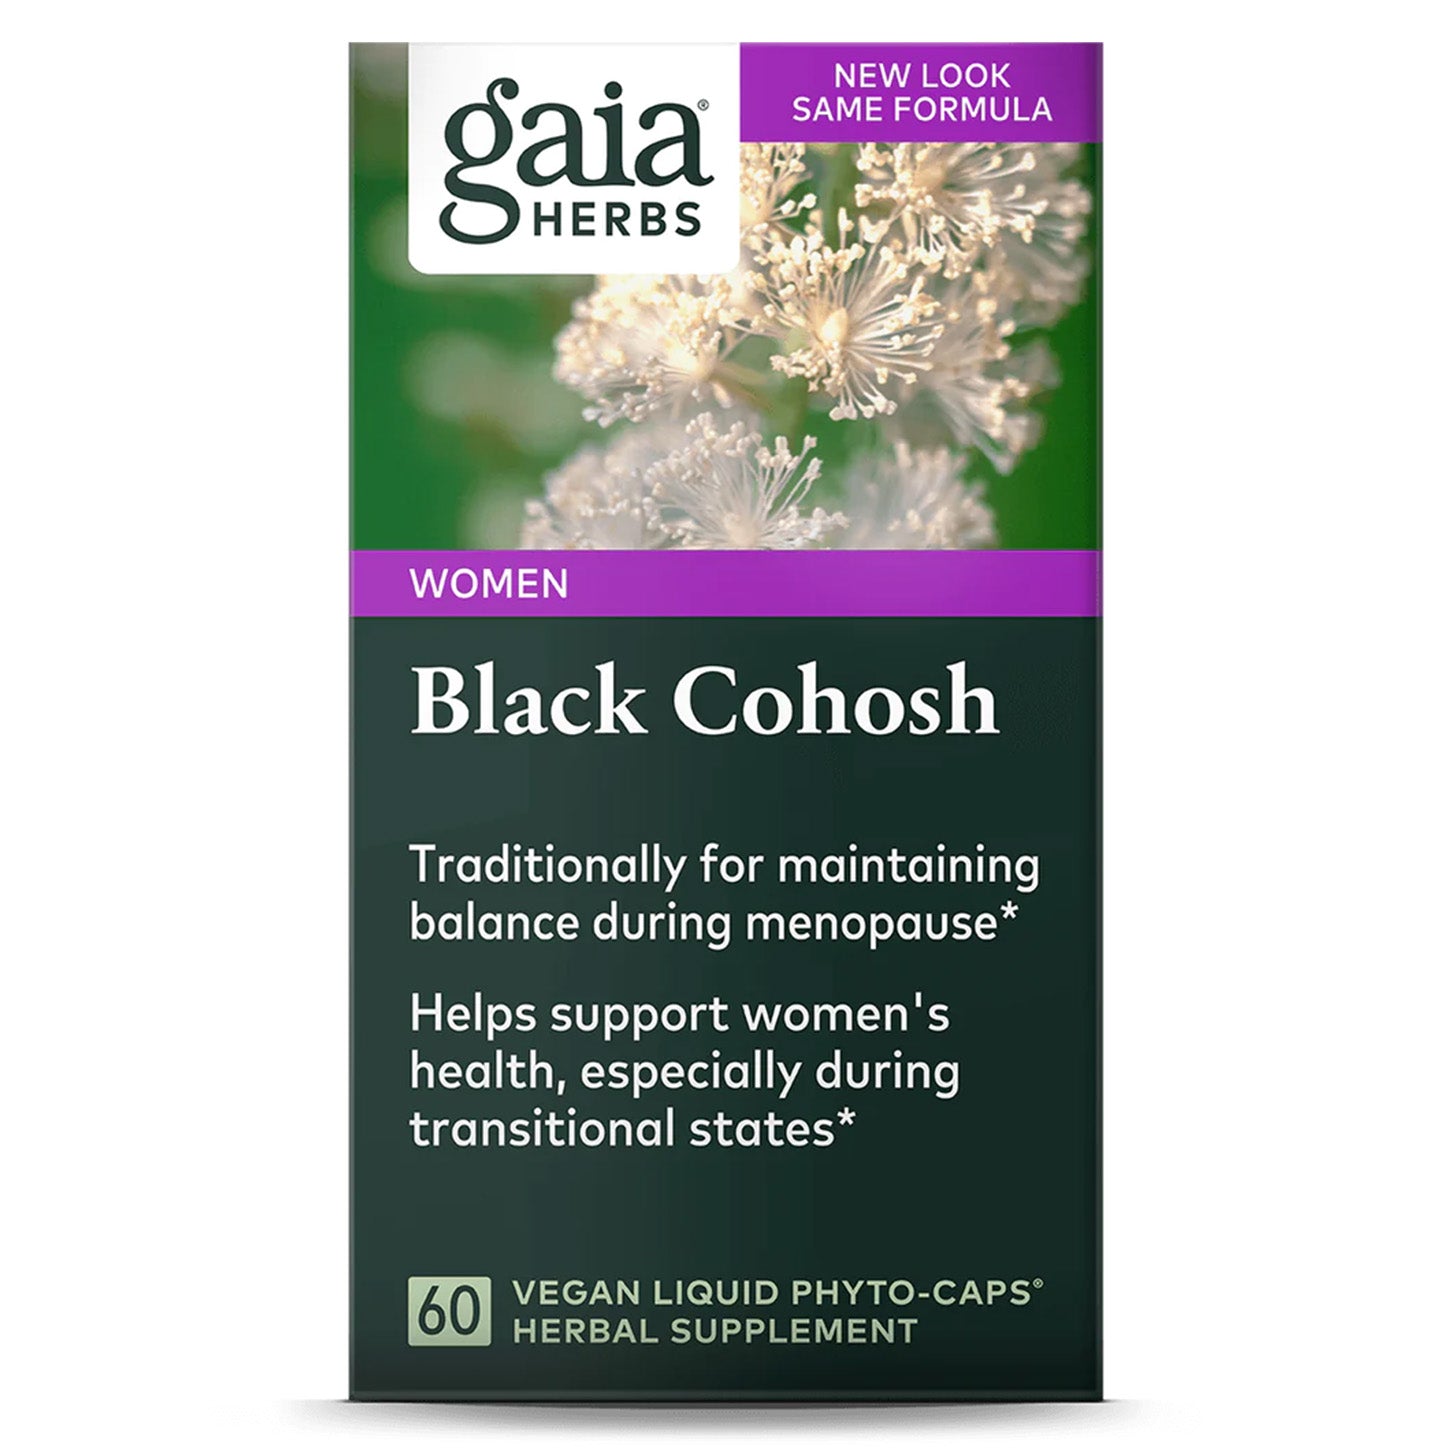 Gaia Herbs Black Cohosh: Apoyo Natural para la Mujer | ProHealth Shop [Panamá]